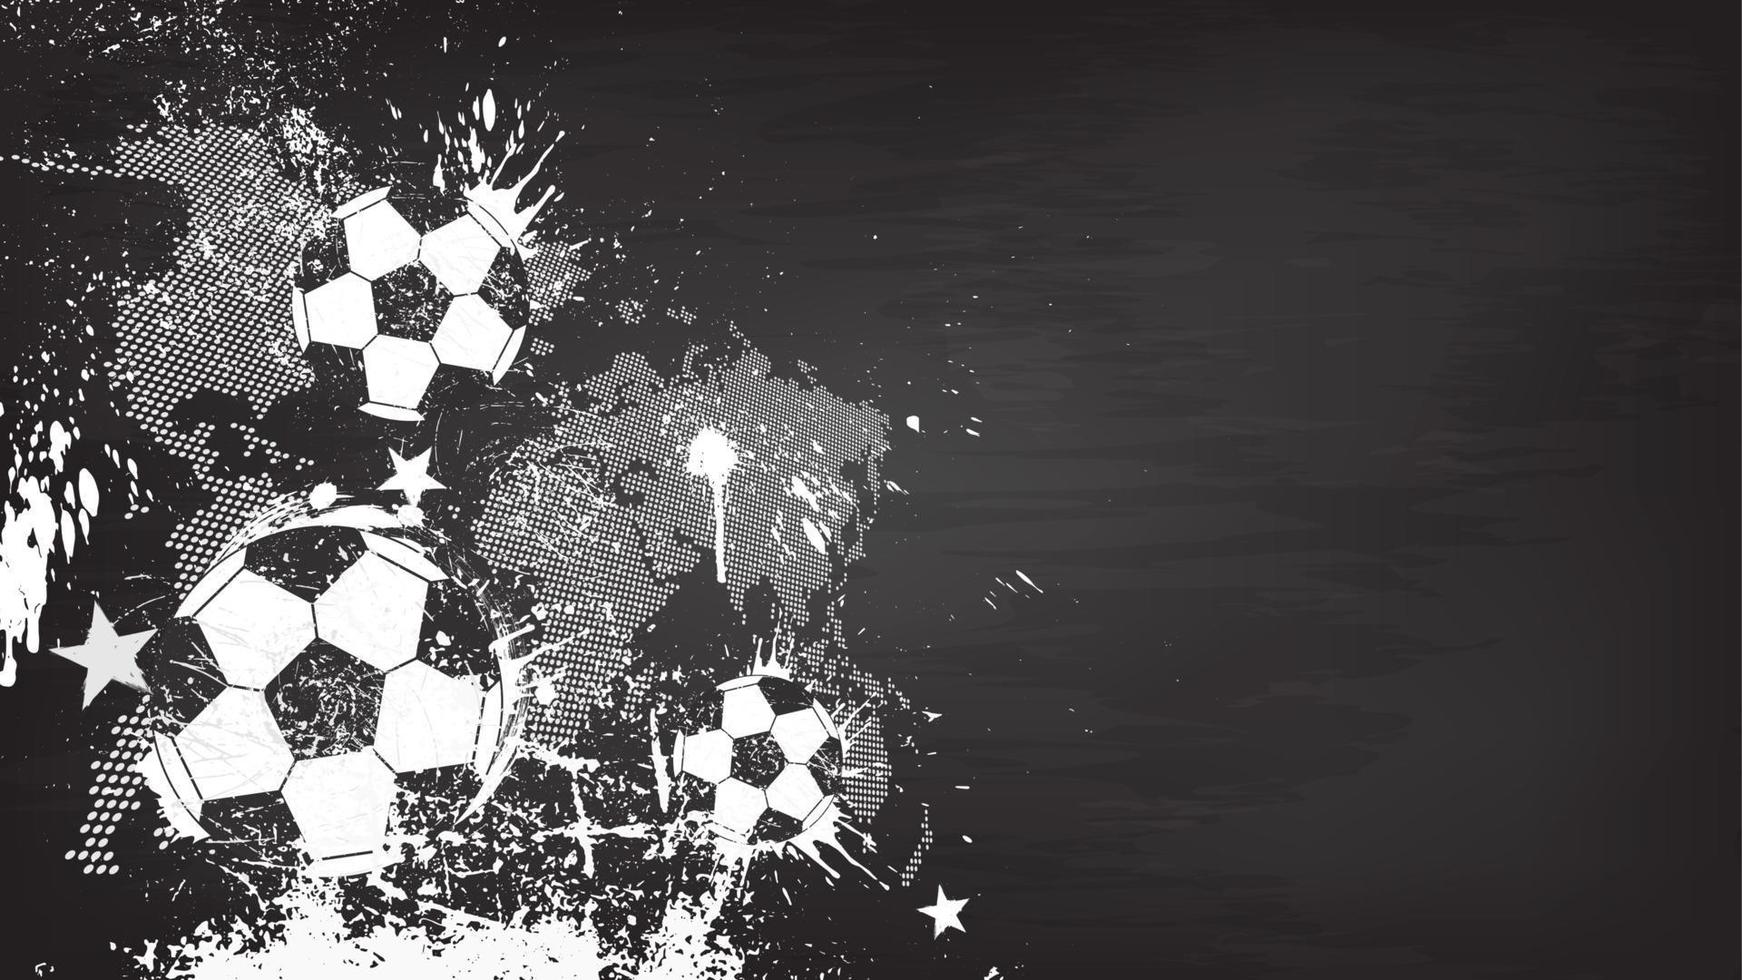 Grunge abstrakter Fußballhintergrund mit Weltkarte und Staubpartikel auf Tafelbeschaffenheit. flaches Design . Vektor für den internationalen WM-Turnierpokal 2018.